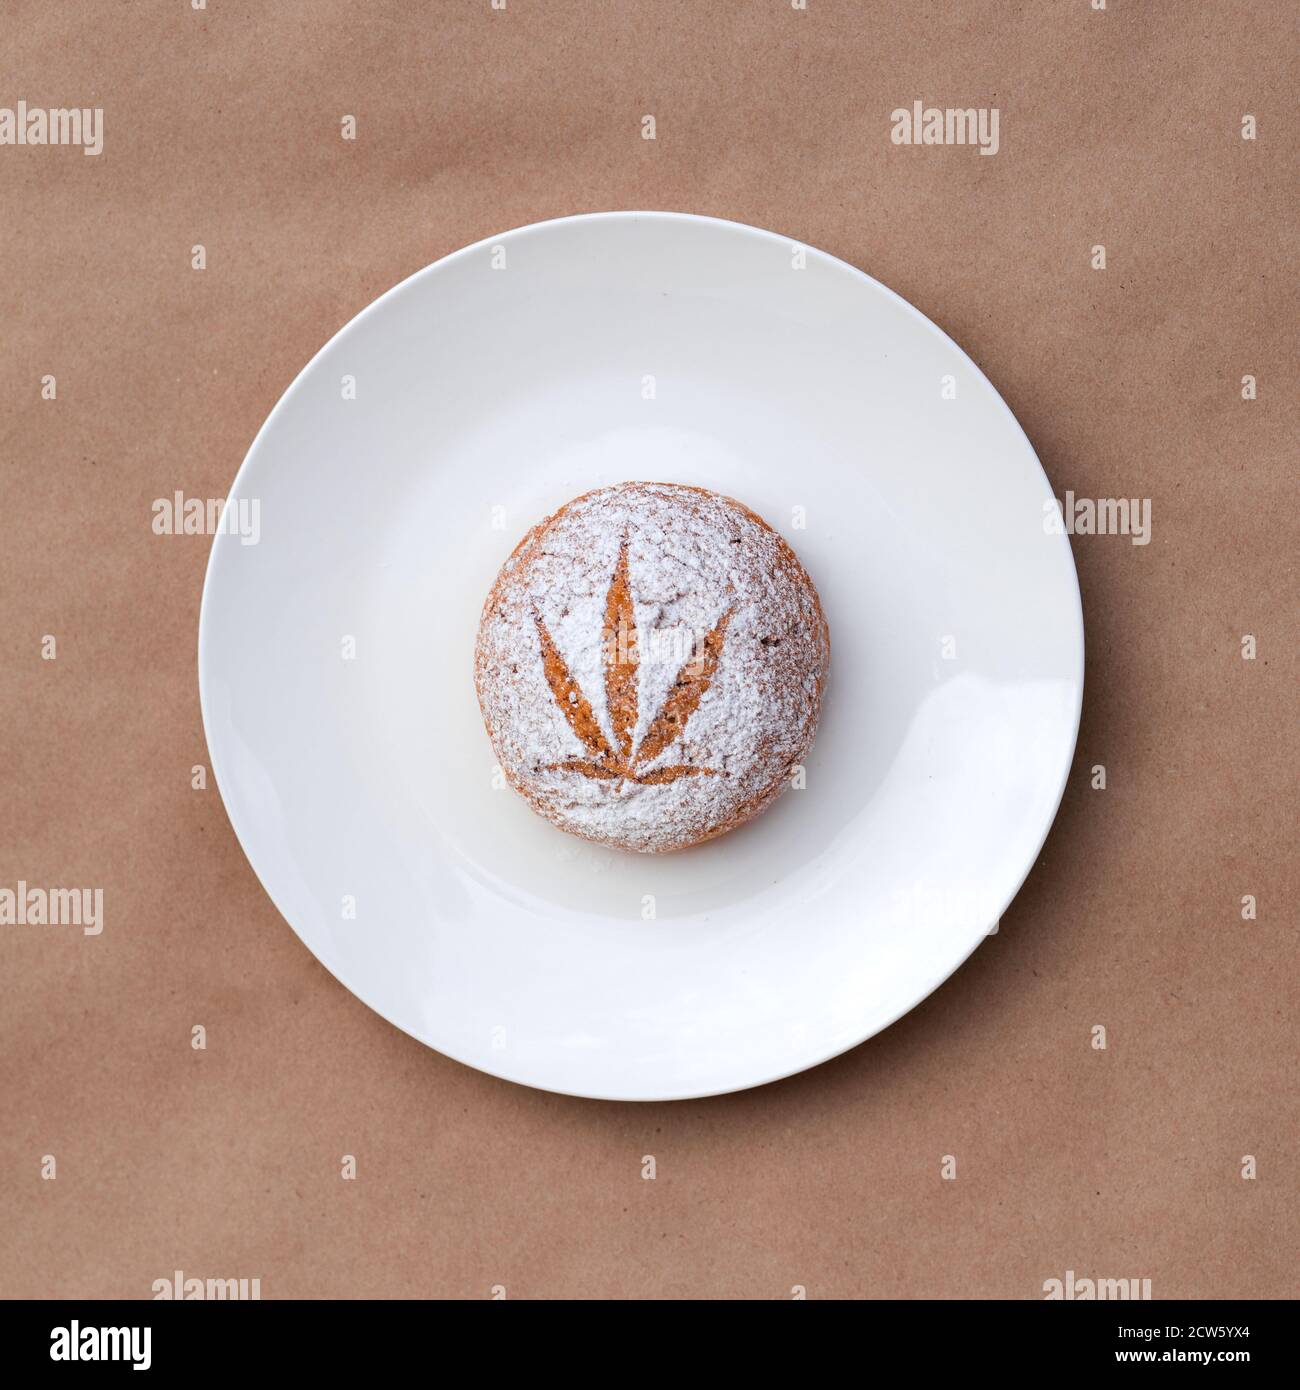 Modèle de feuille de cannabis faite avec du sucre en poudre sur les cookies sur fond kraft. Extraction de résine vivante de cannabis. Bannière Banque D'Images